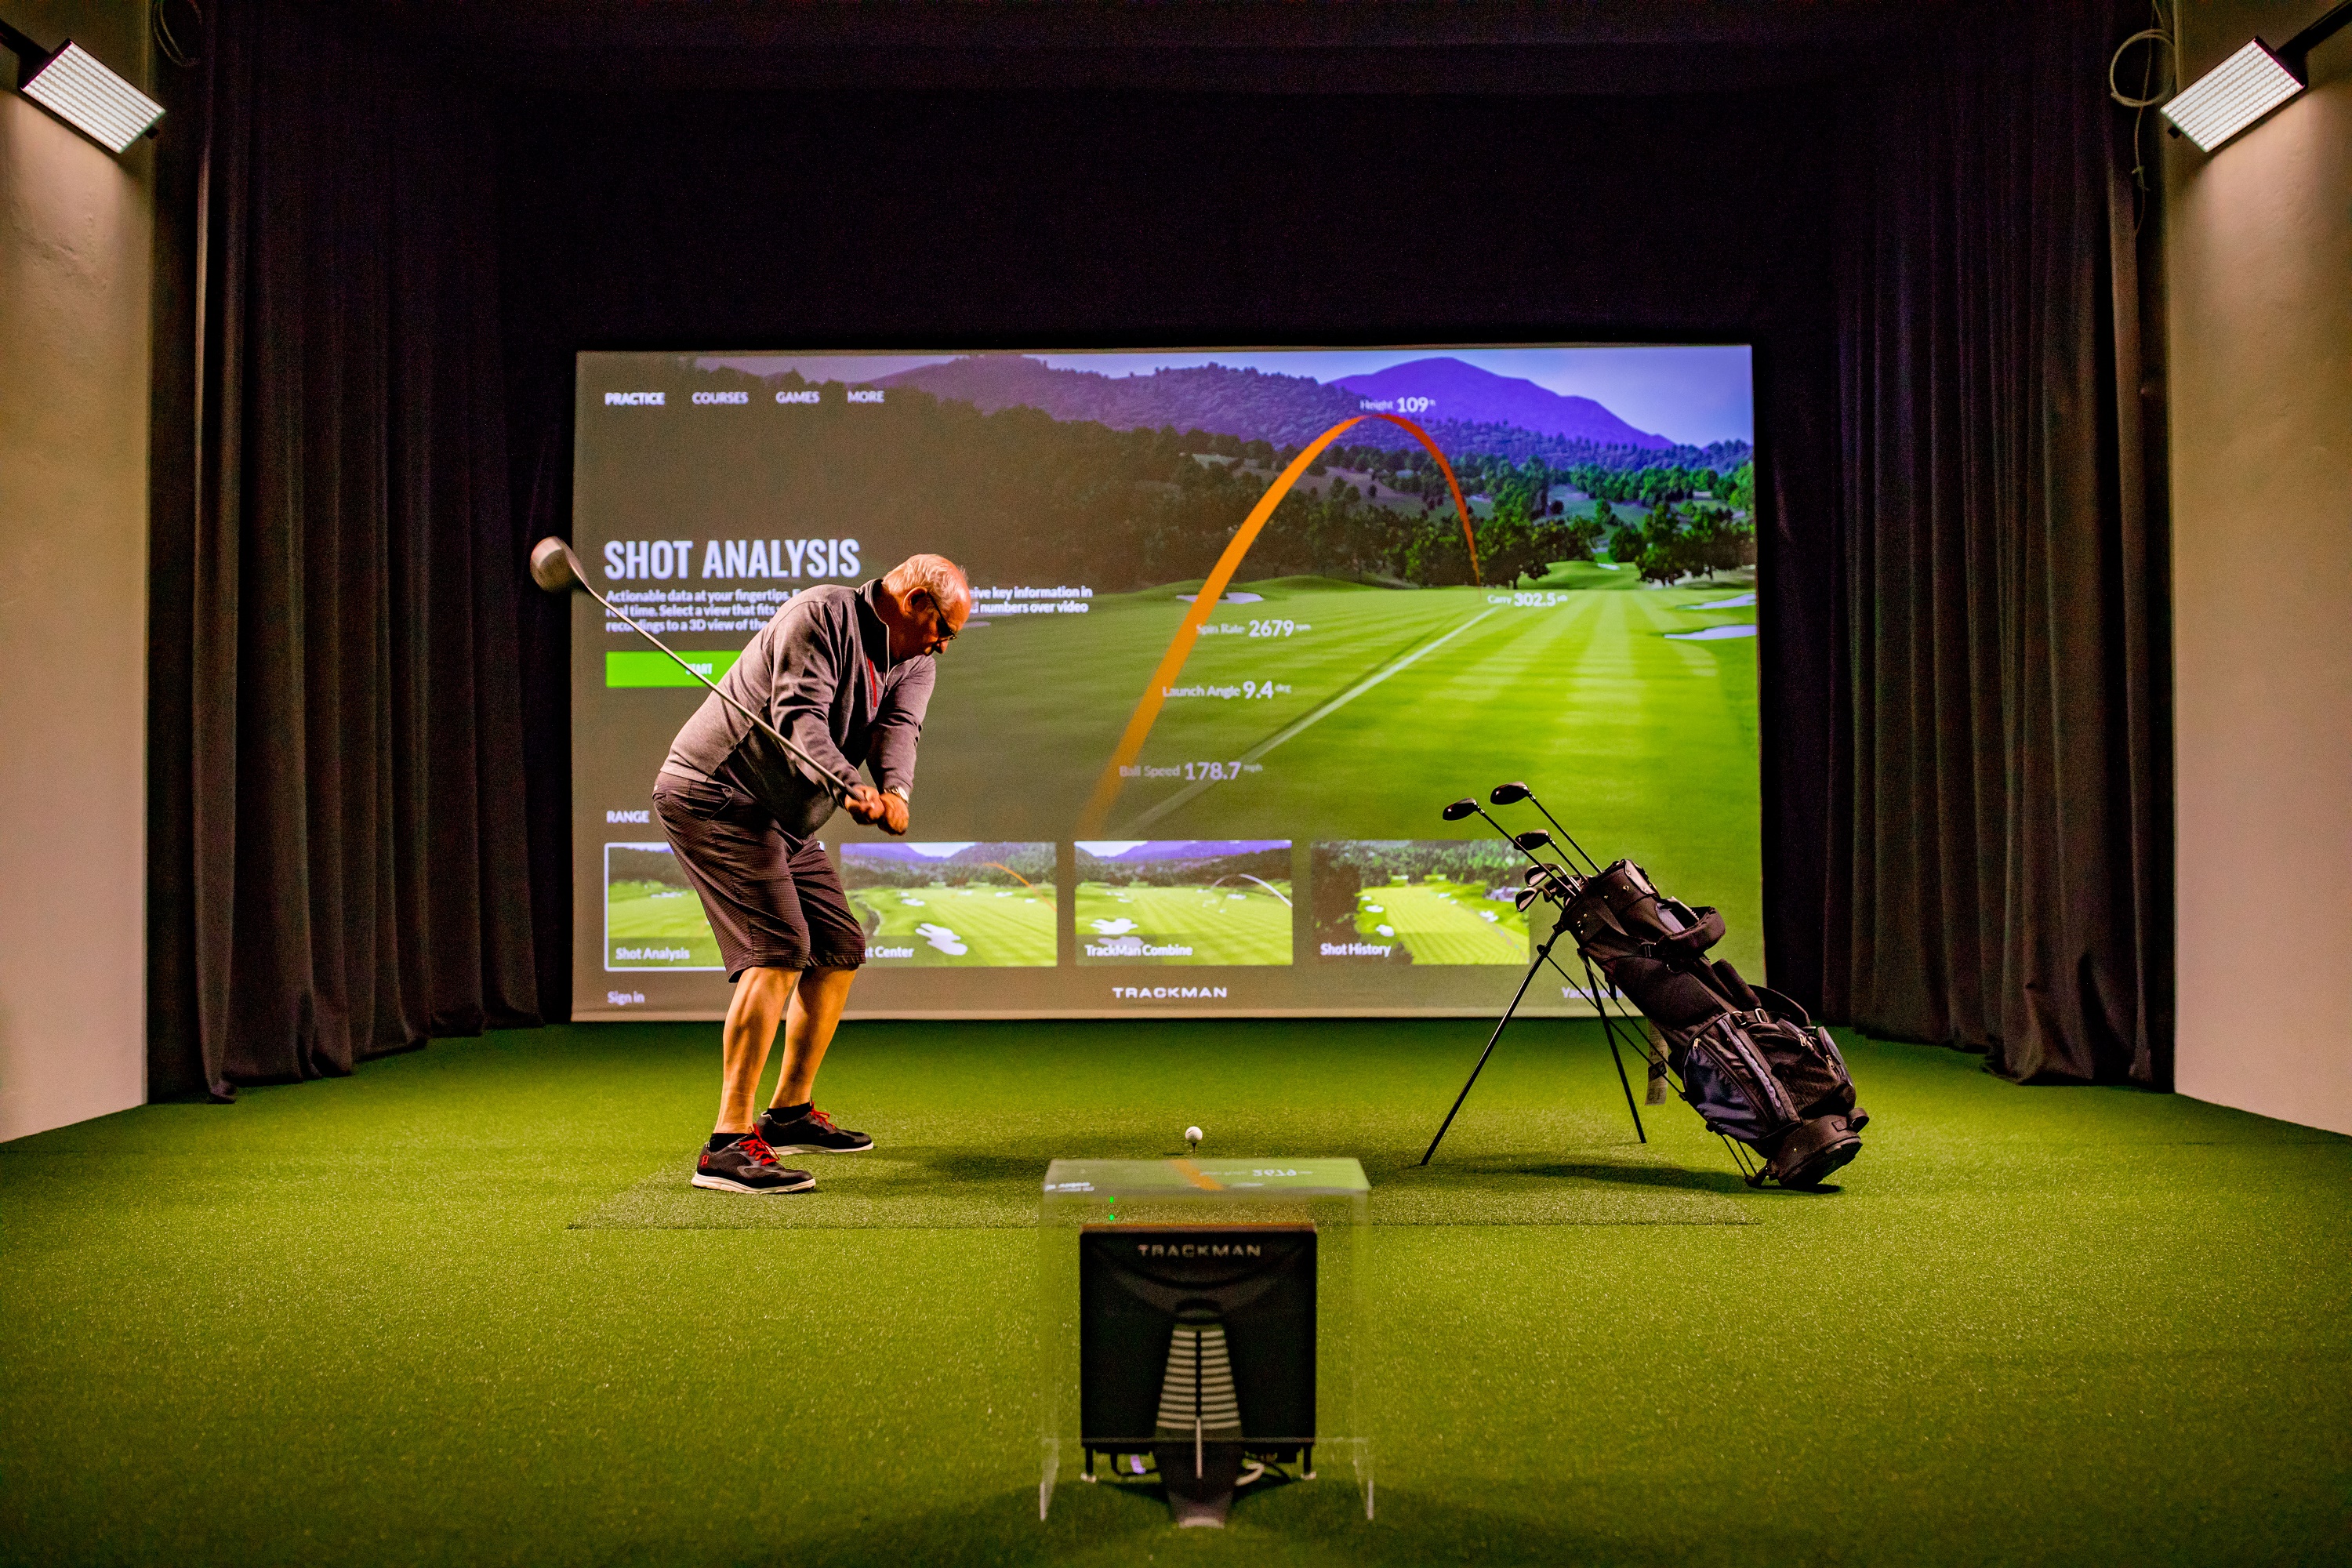 Beeindruckt zeigte sich das Team der PriMa von der Indoor Golfanlage. Für golfbegeisterte Urlauber stellt der TrackMan Simulator eine optimale Ergänzung zu dem Angebot der „Chiemsee Golfcard“ dar. Bildrechte: Yachthotel Chiemsee GmbH